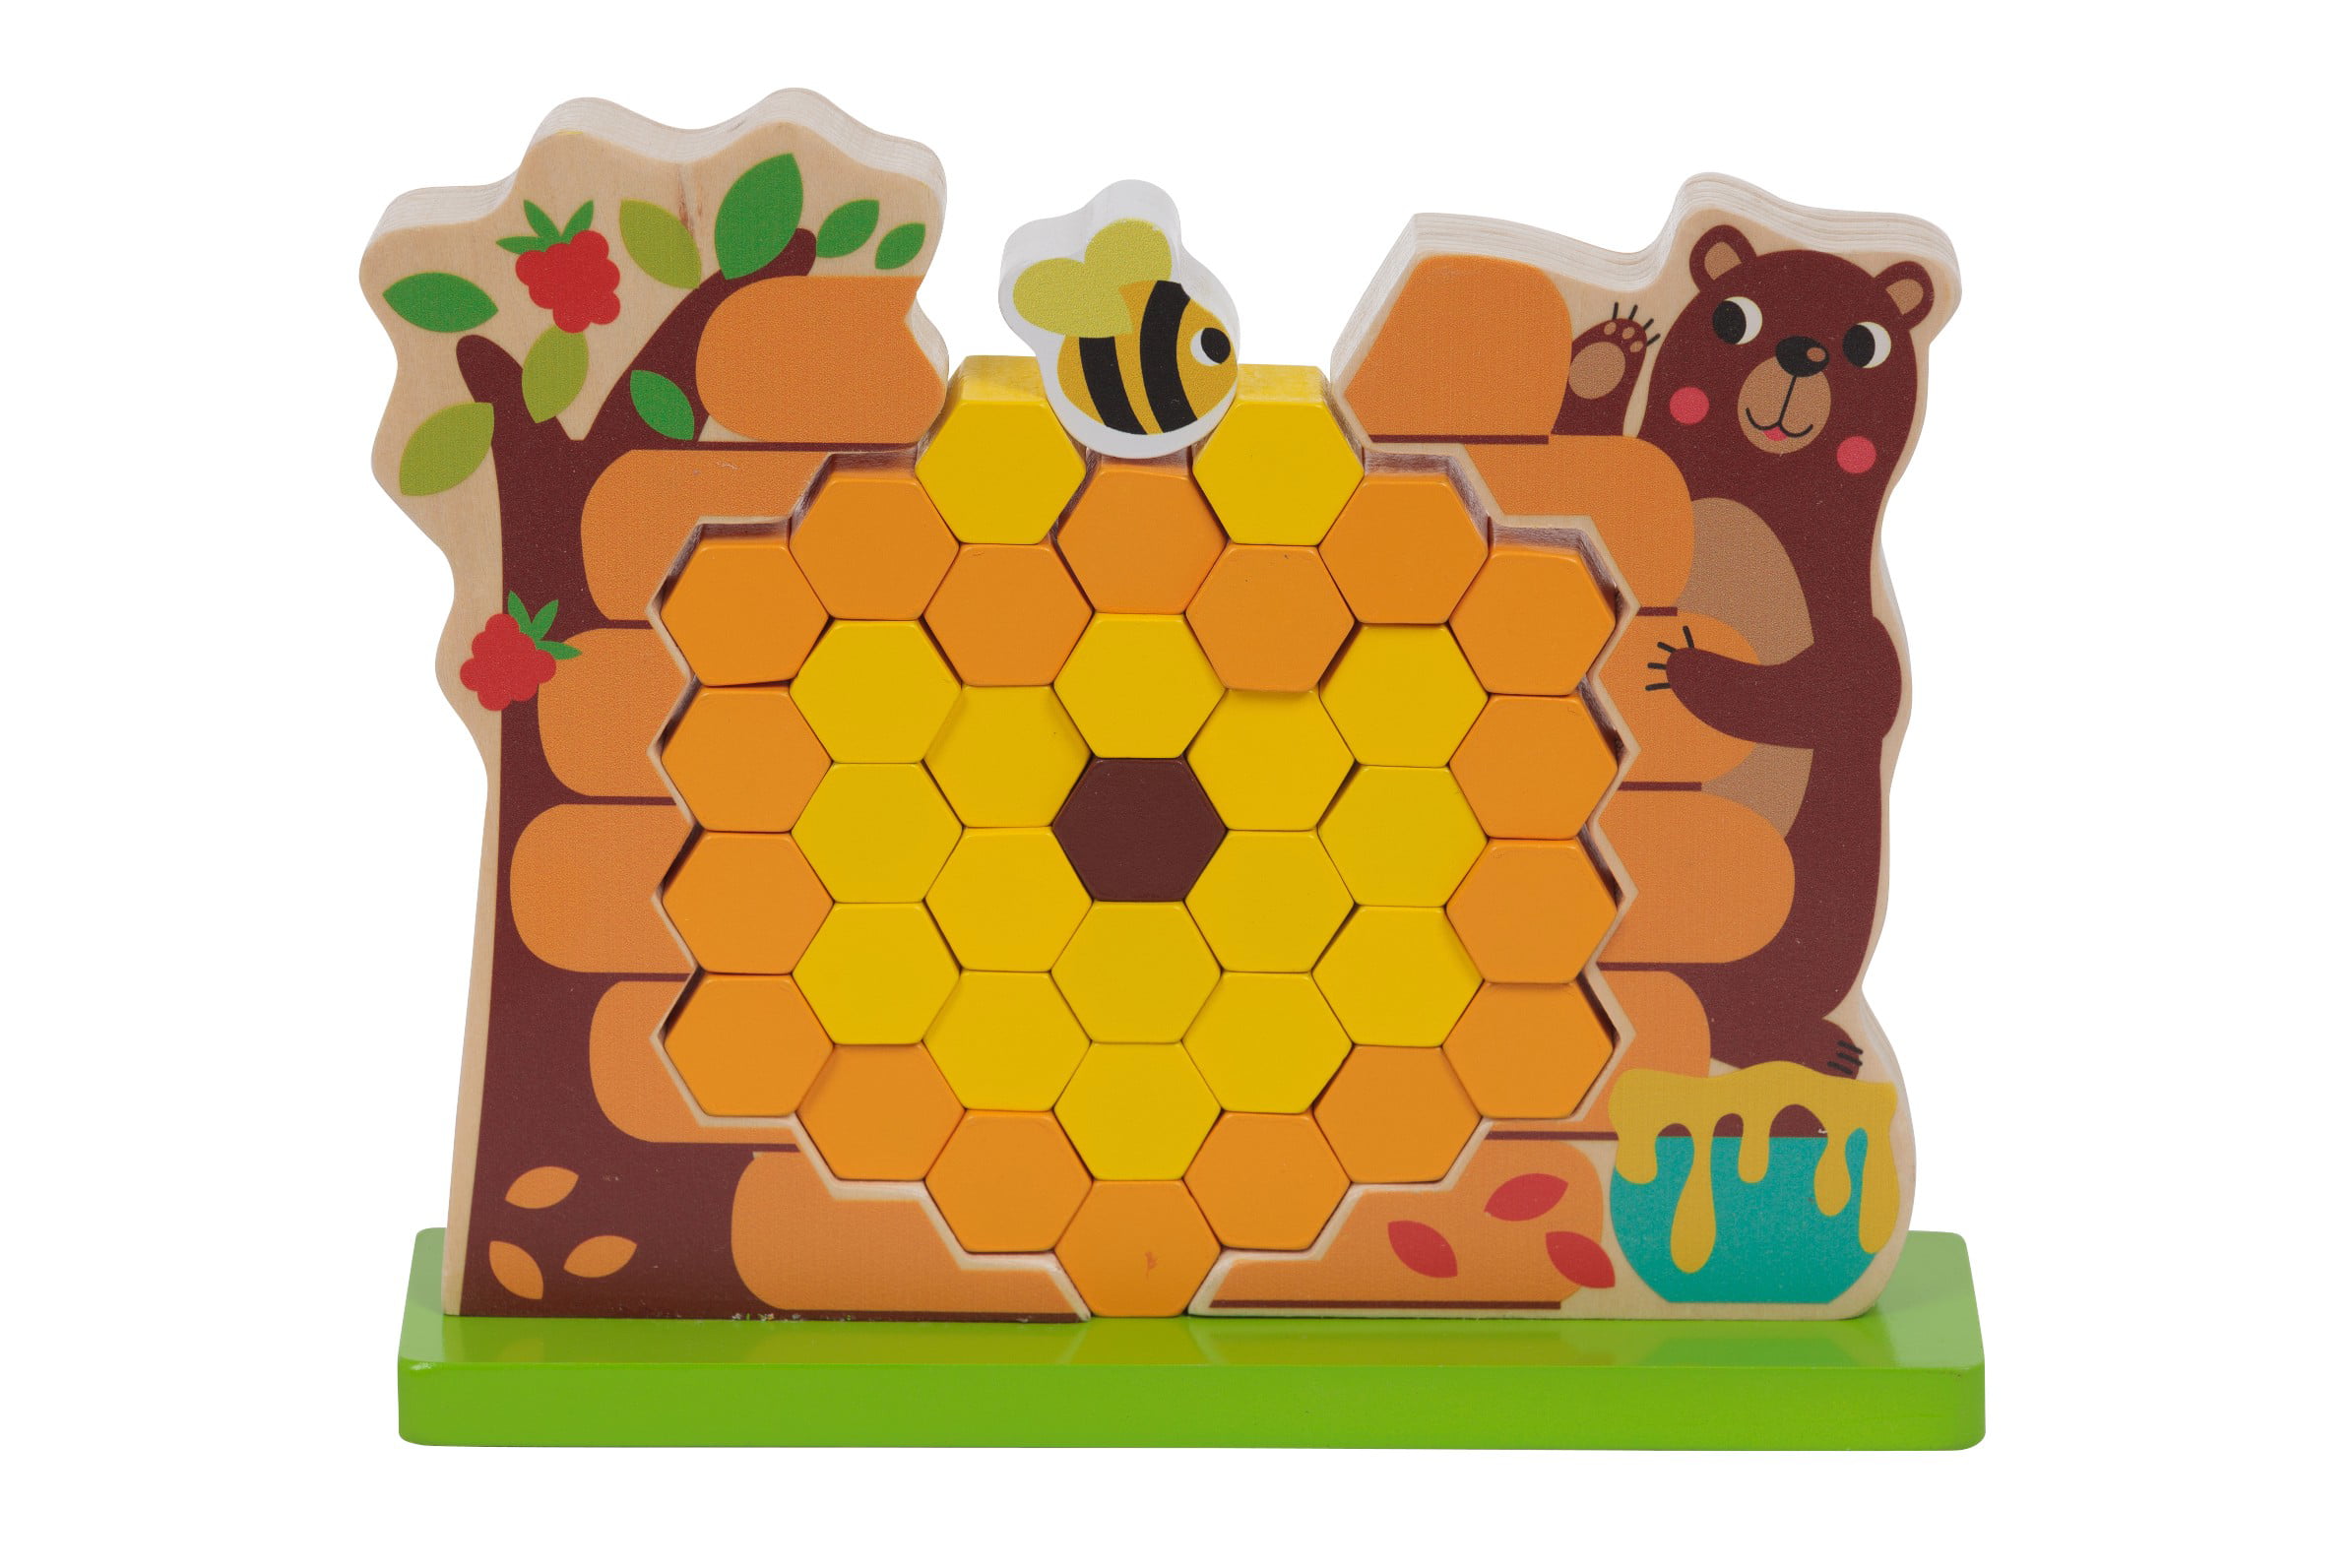 Honey Bee Chunky Wood Block Decor